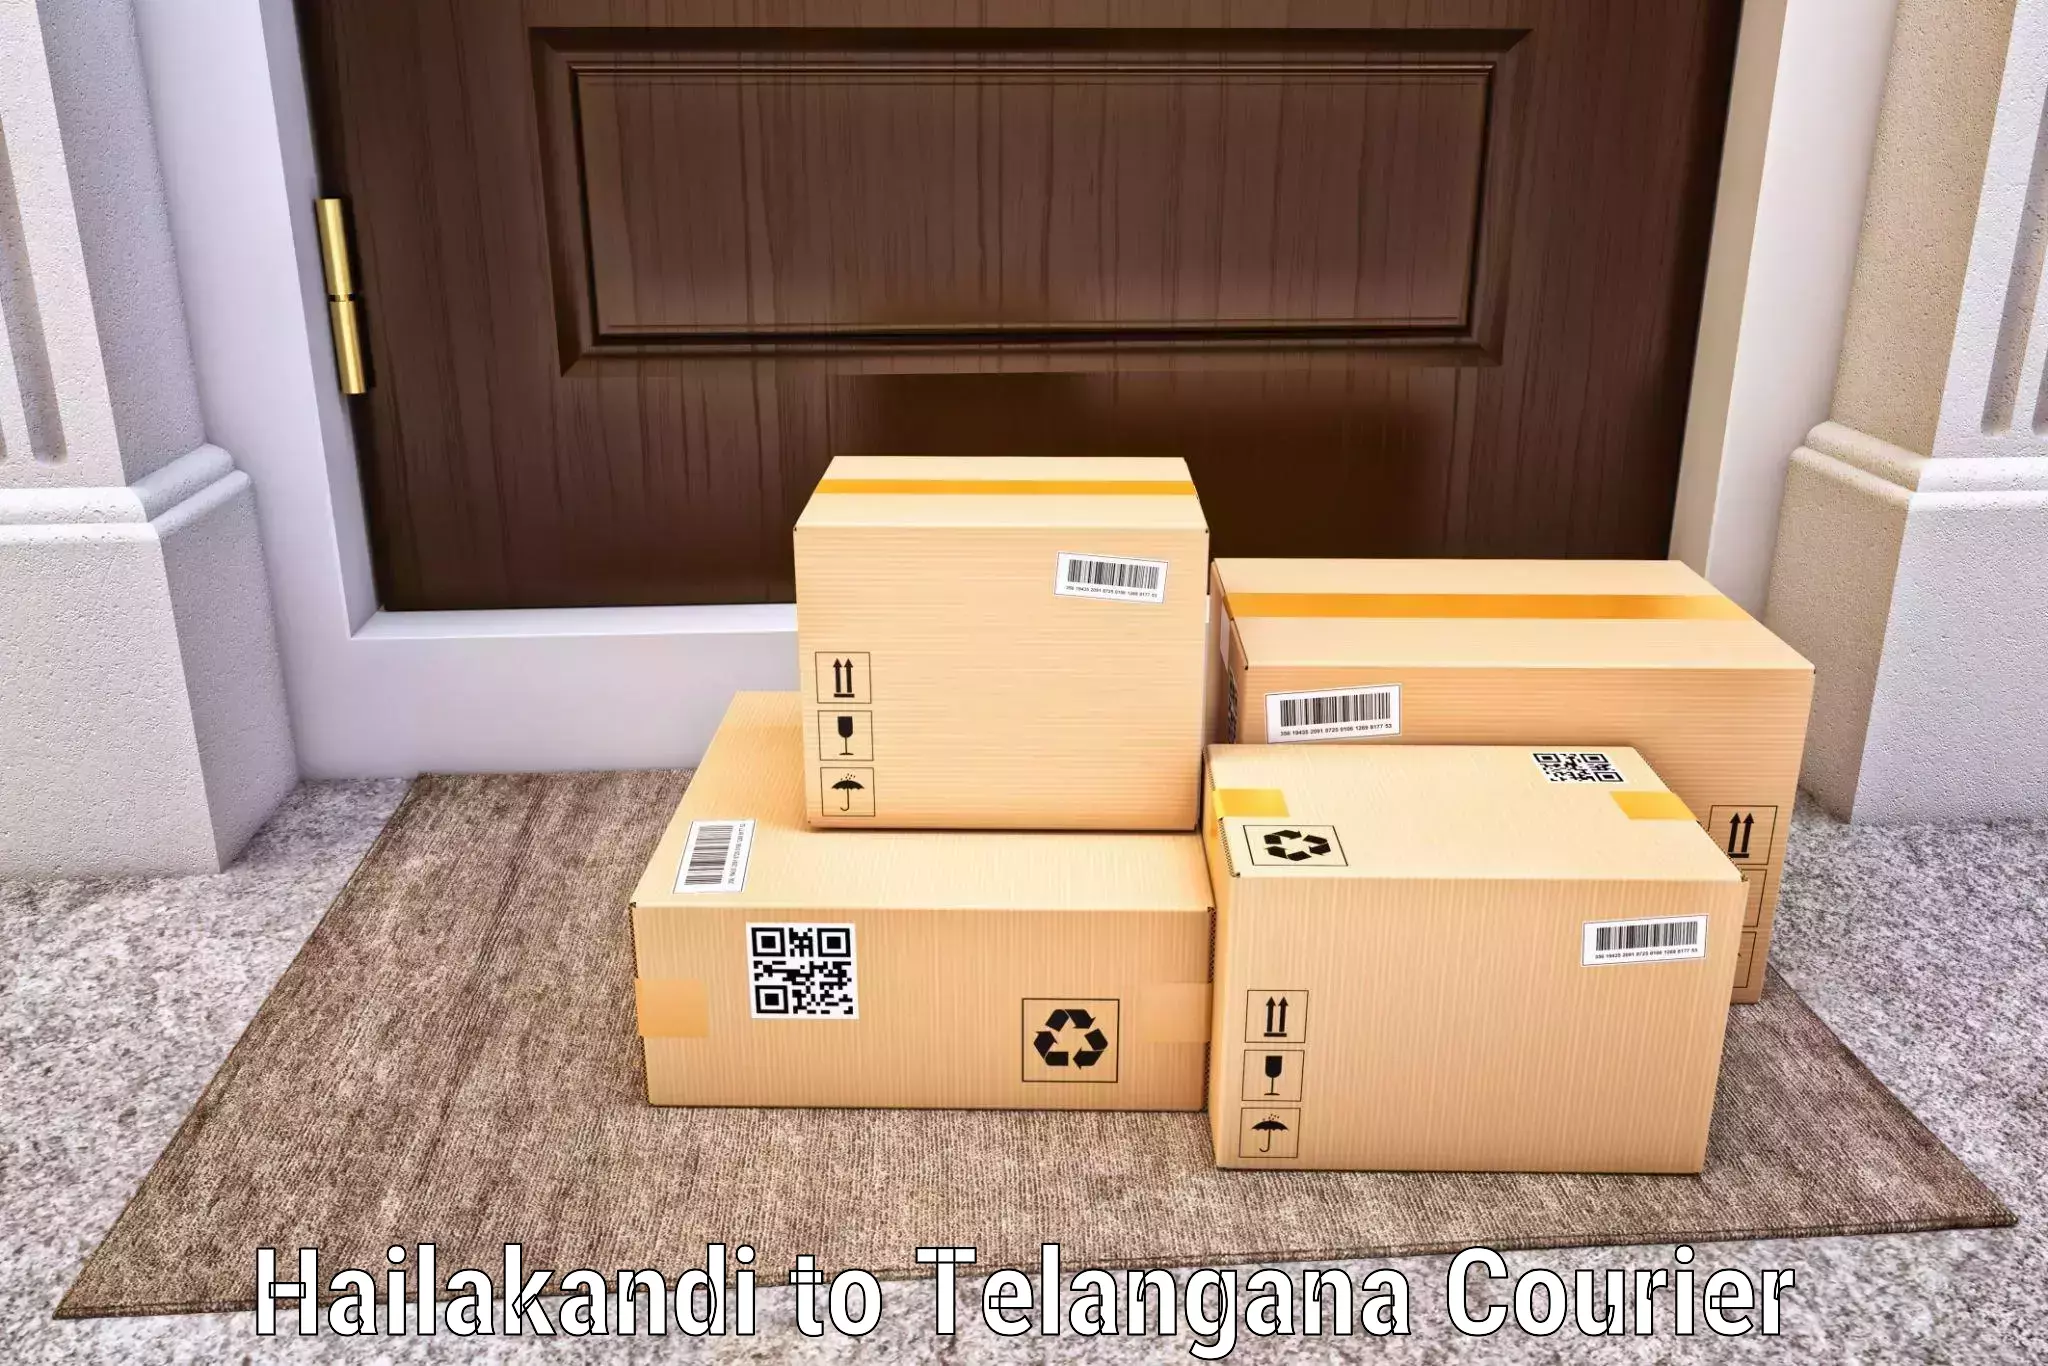 Cargo courier service Hailakandi to Jainad